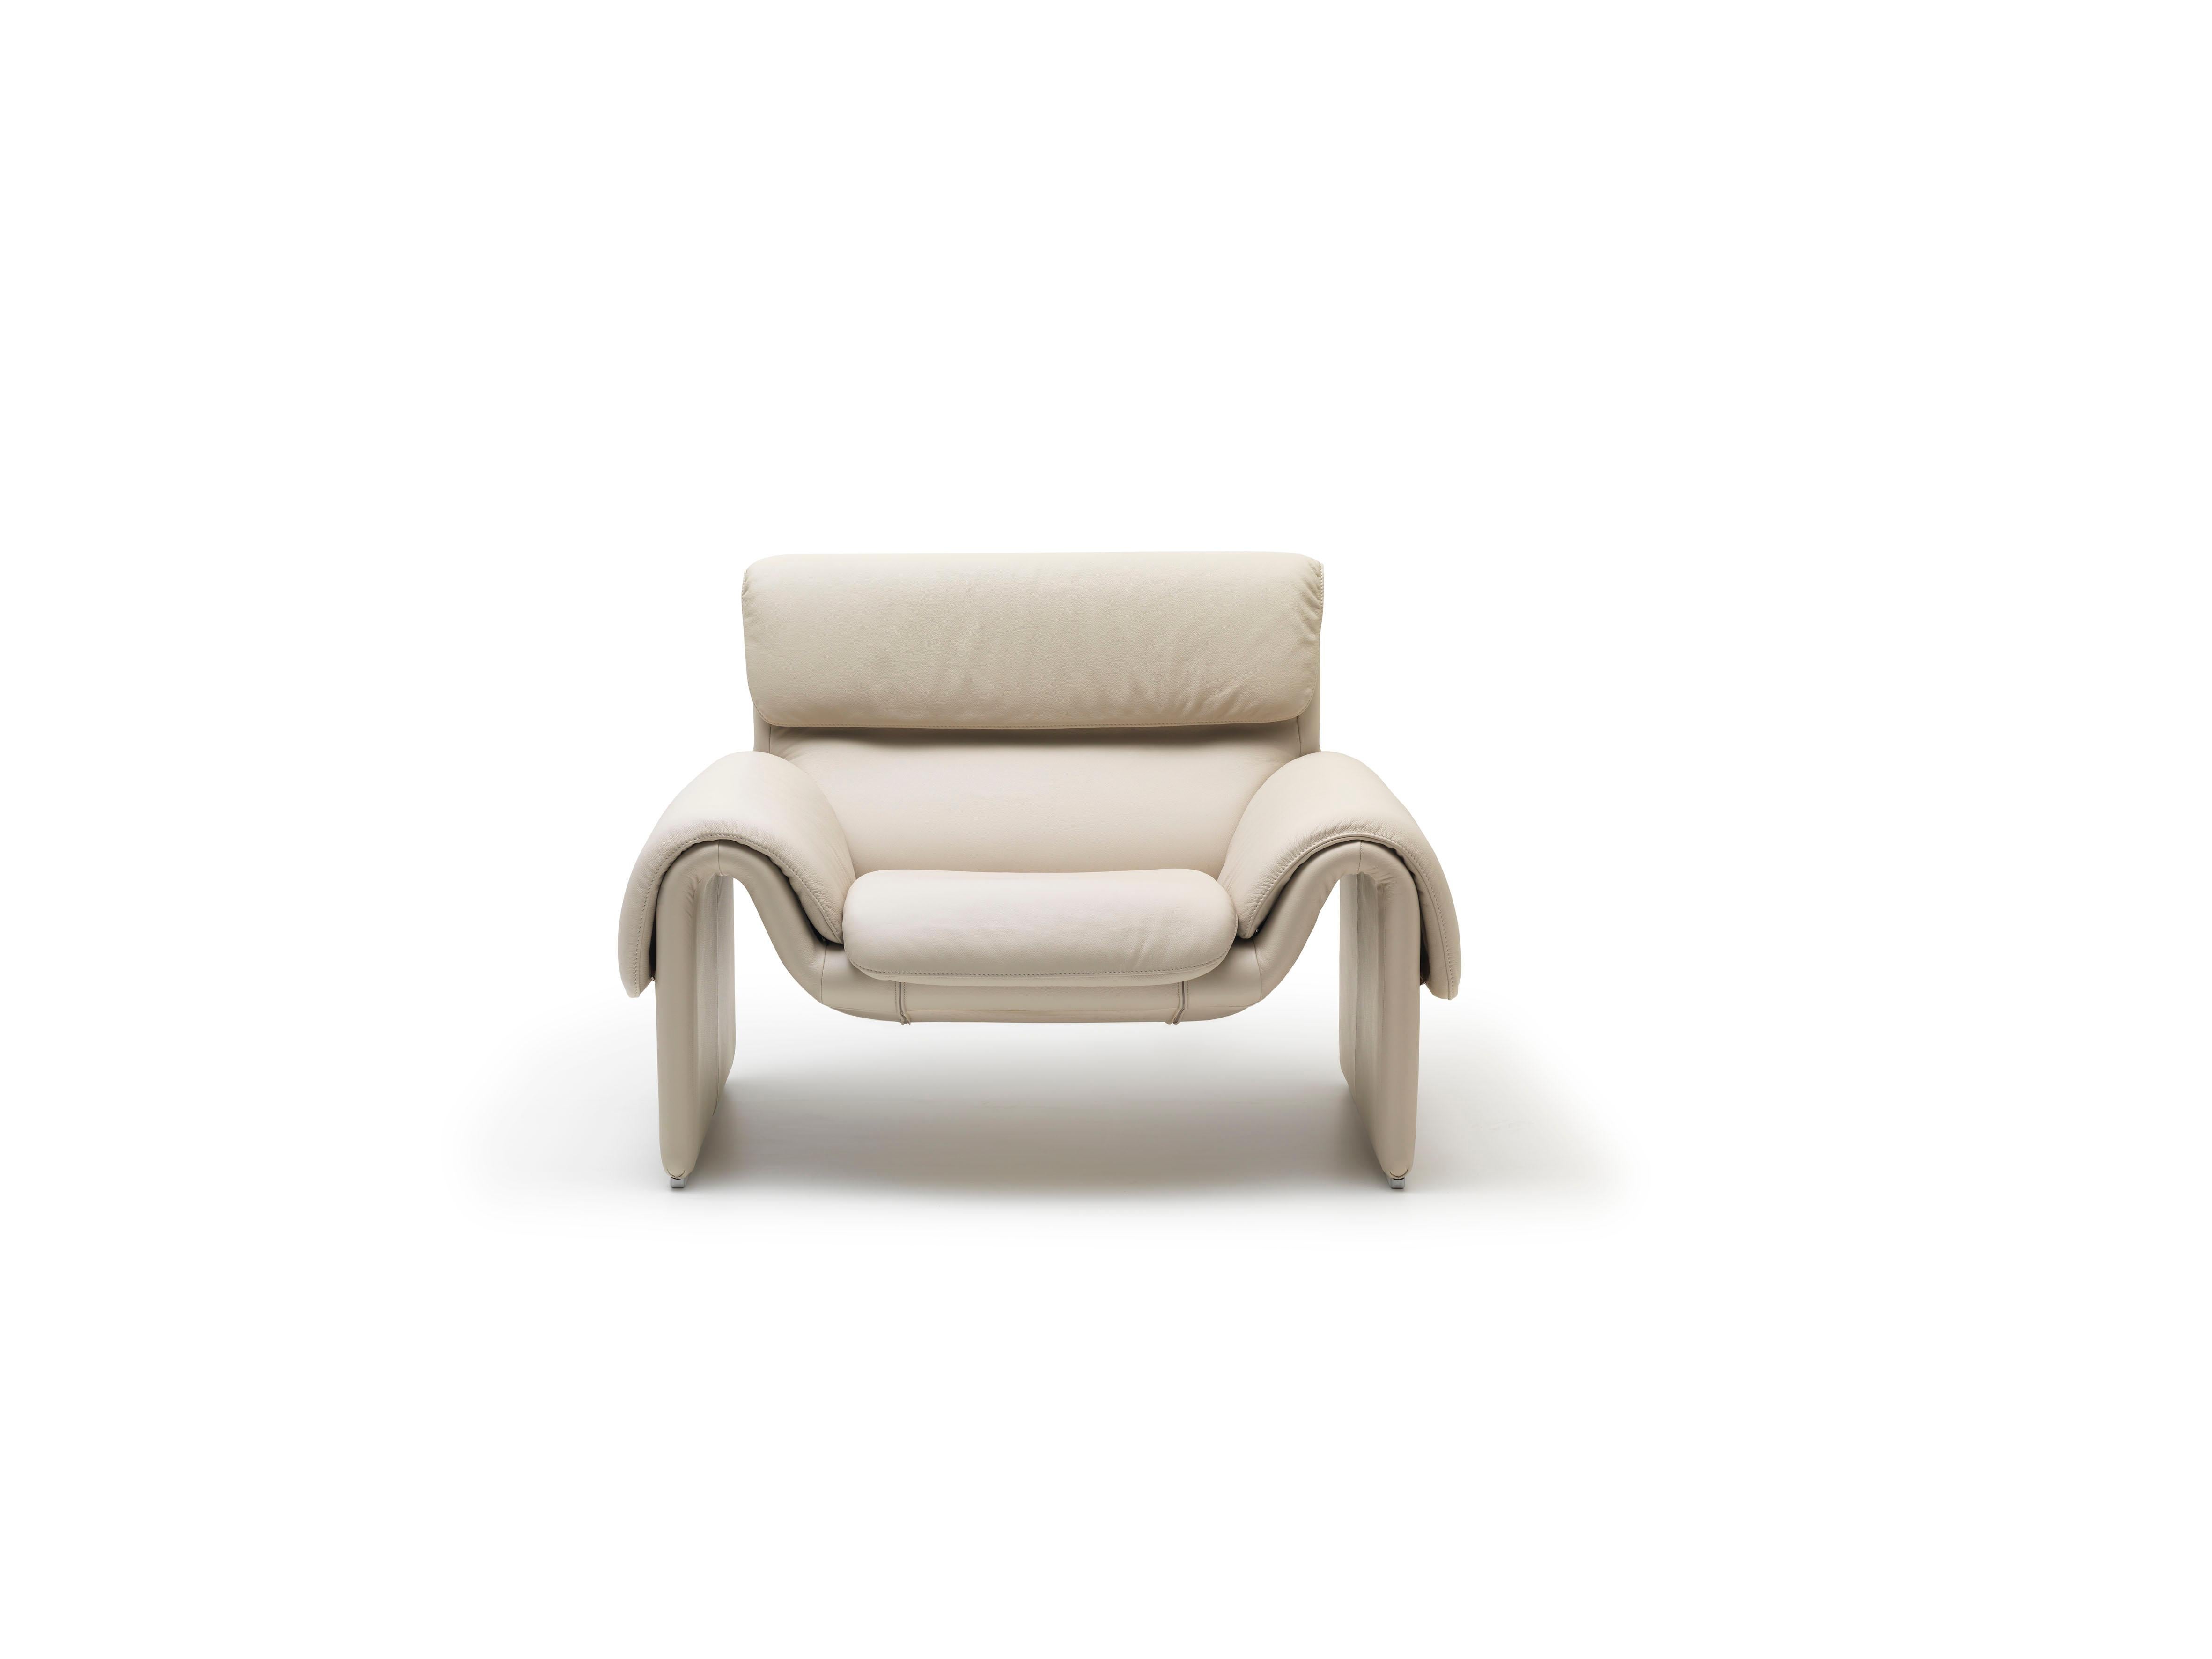 DS-2011 Sessel von De Sede.
Abmessungen: T 59 x B 114 x H 84 cm.
MATERIALIEN: Buchenholz, Leder.

Die Preise können sich je nach den gewählten Materialien und der Größe ändern. 

Ästhetik und Funktionalität in einer harmonischen Kombination.